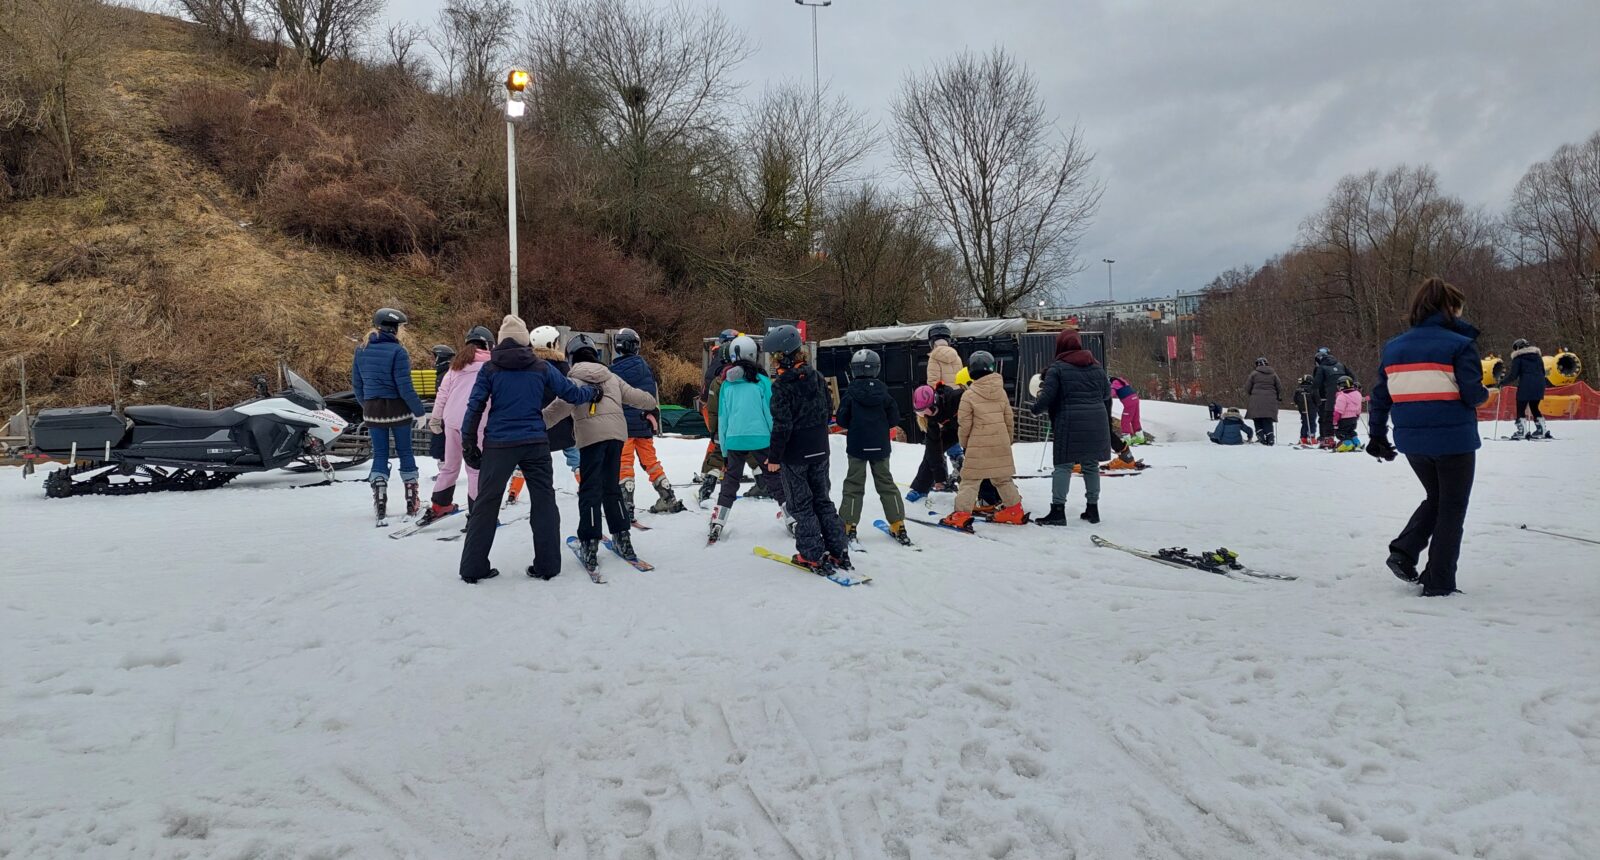 En stor grupp unga barn och står med ryf´ggen i kameran i slalombacken.